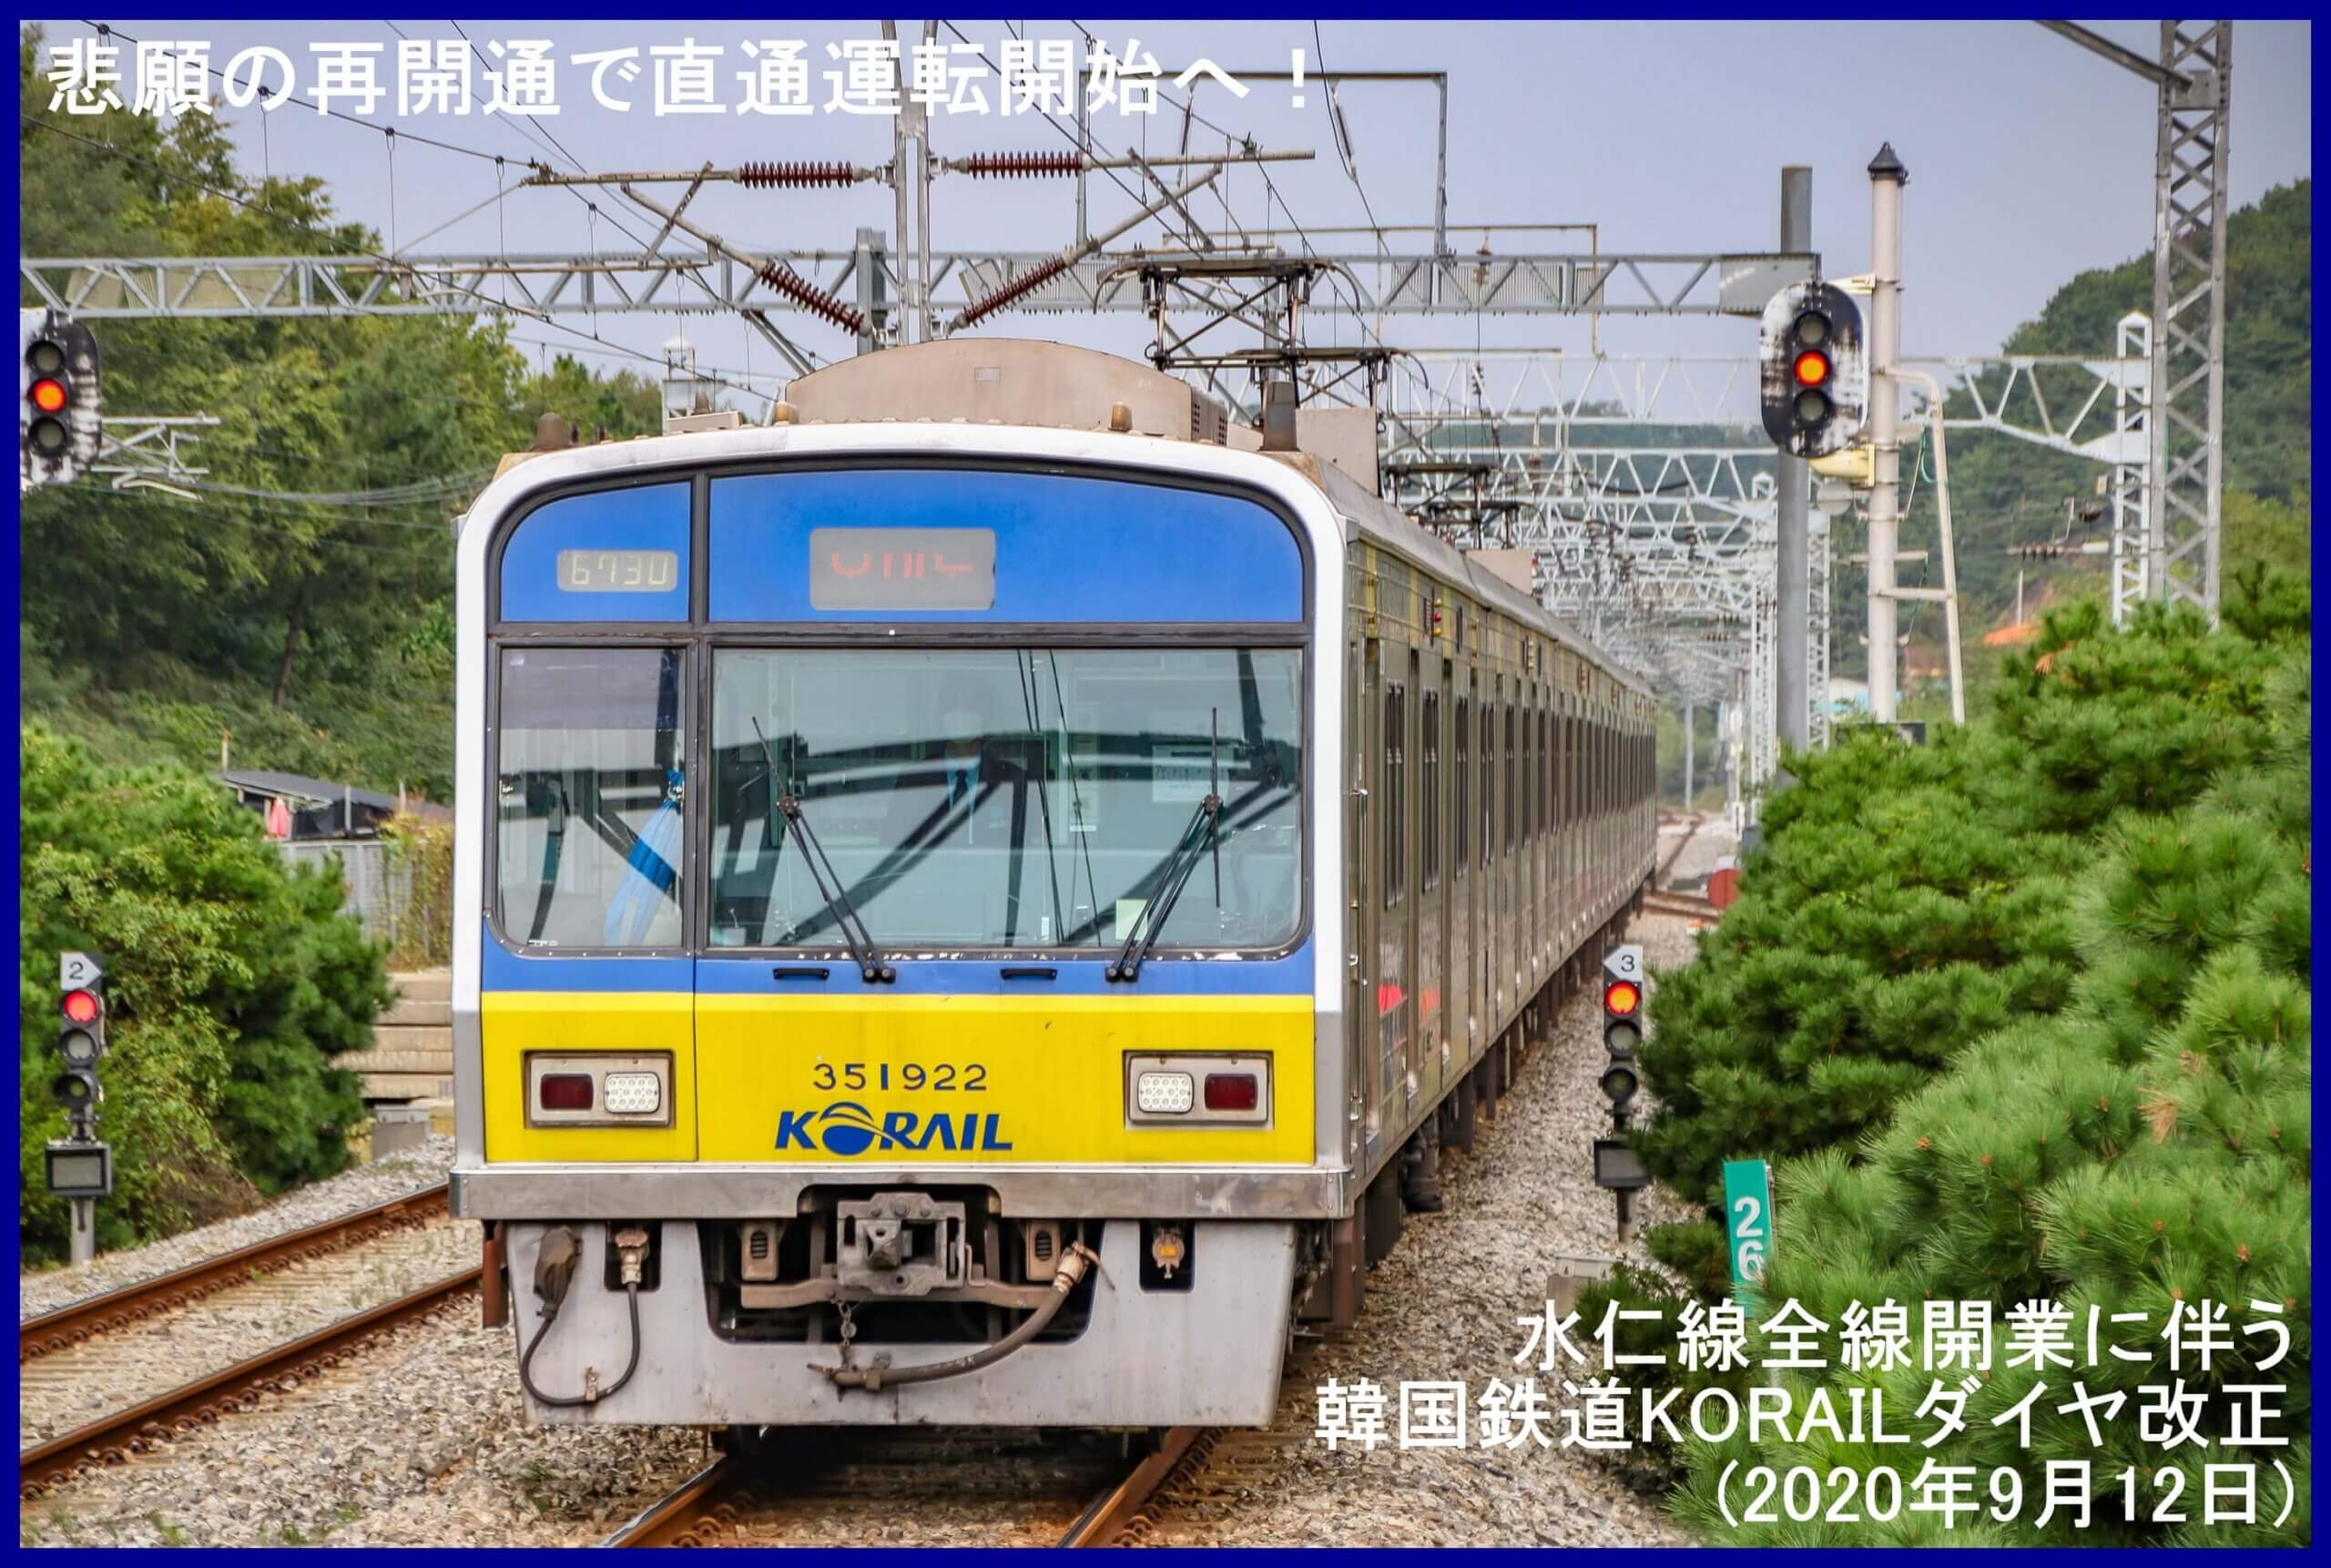 悲願の再開通で直通運転開始へ！　水仁線全線開業に伴う韓国鉄道KORAILダイヤ改正(2020年9月12日)